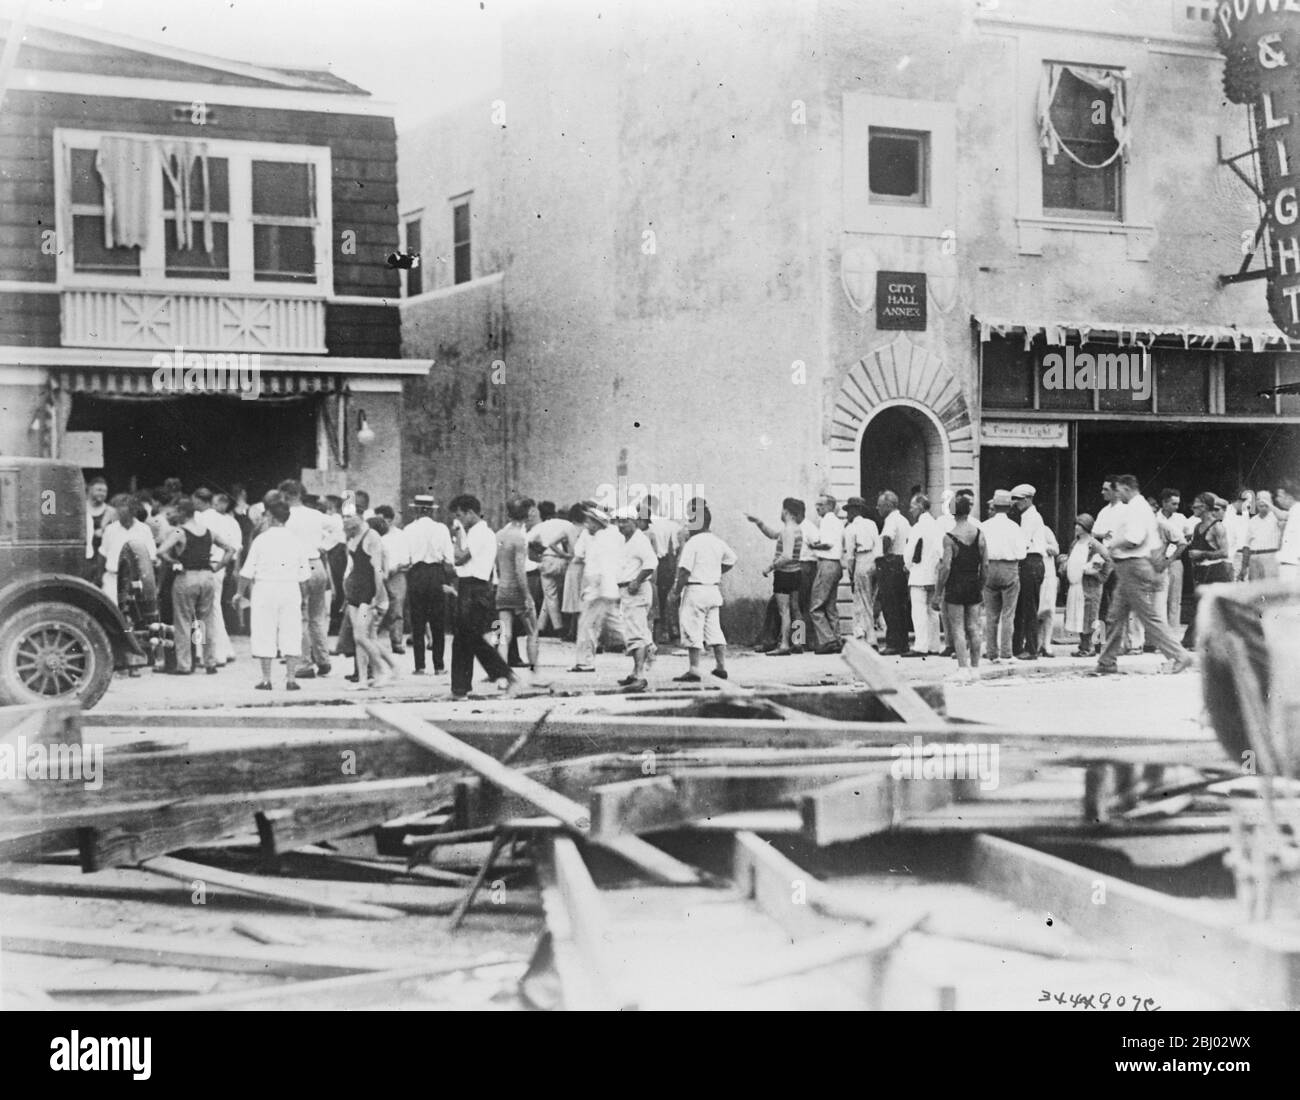 Distribuzione di cibo dopo uragano disastroso e alluvione in Florida . - i residenti di Miami in strade disseminate di detriti in fila in attesa di biglietti che li danno diritto alle loro razioni di cibo . - 2 ottobre 1926 Foto Stock